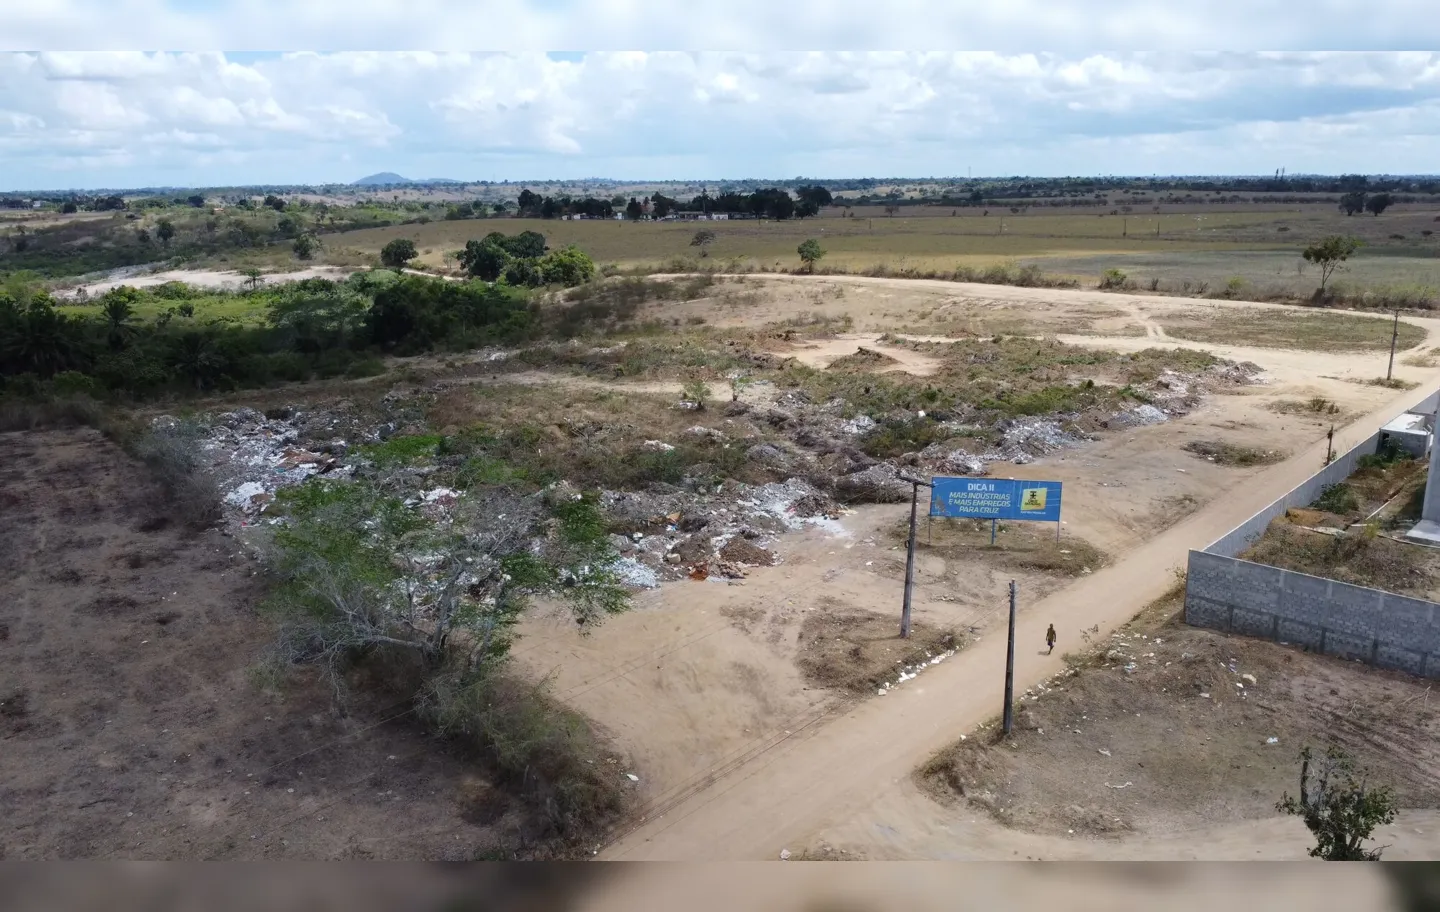 Imagens aéreas da região, obtidas pelo Portal A TARDE, mostram o terreno sem empreendimentos e com a presença de vegetação arbustiva